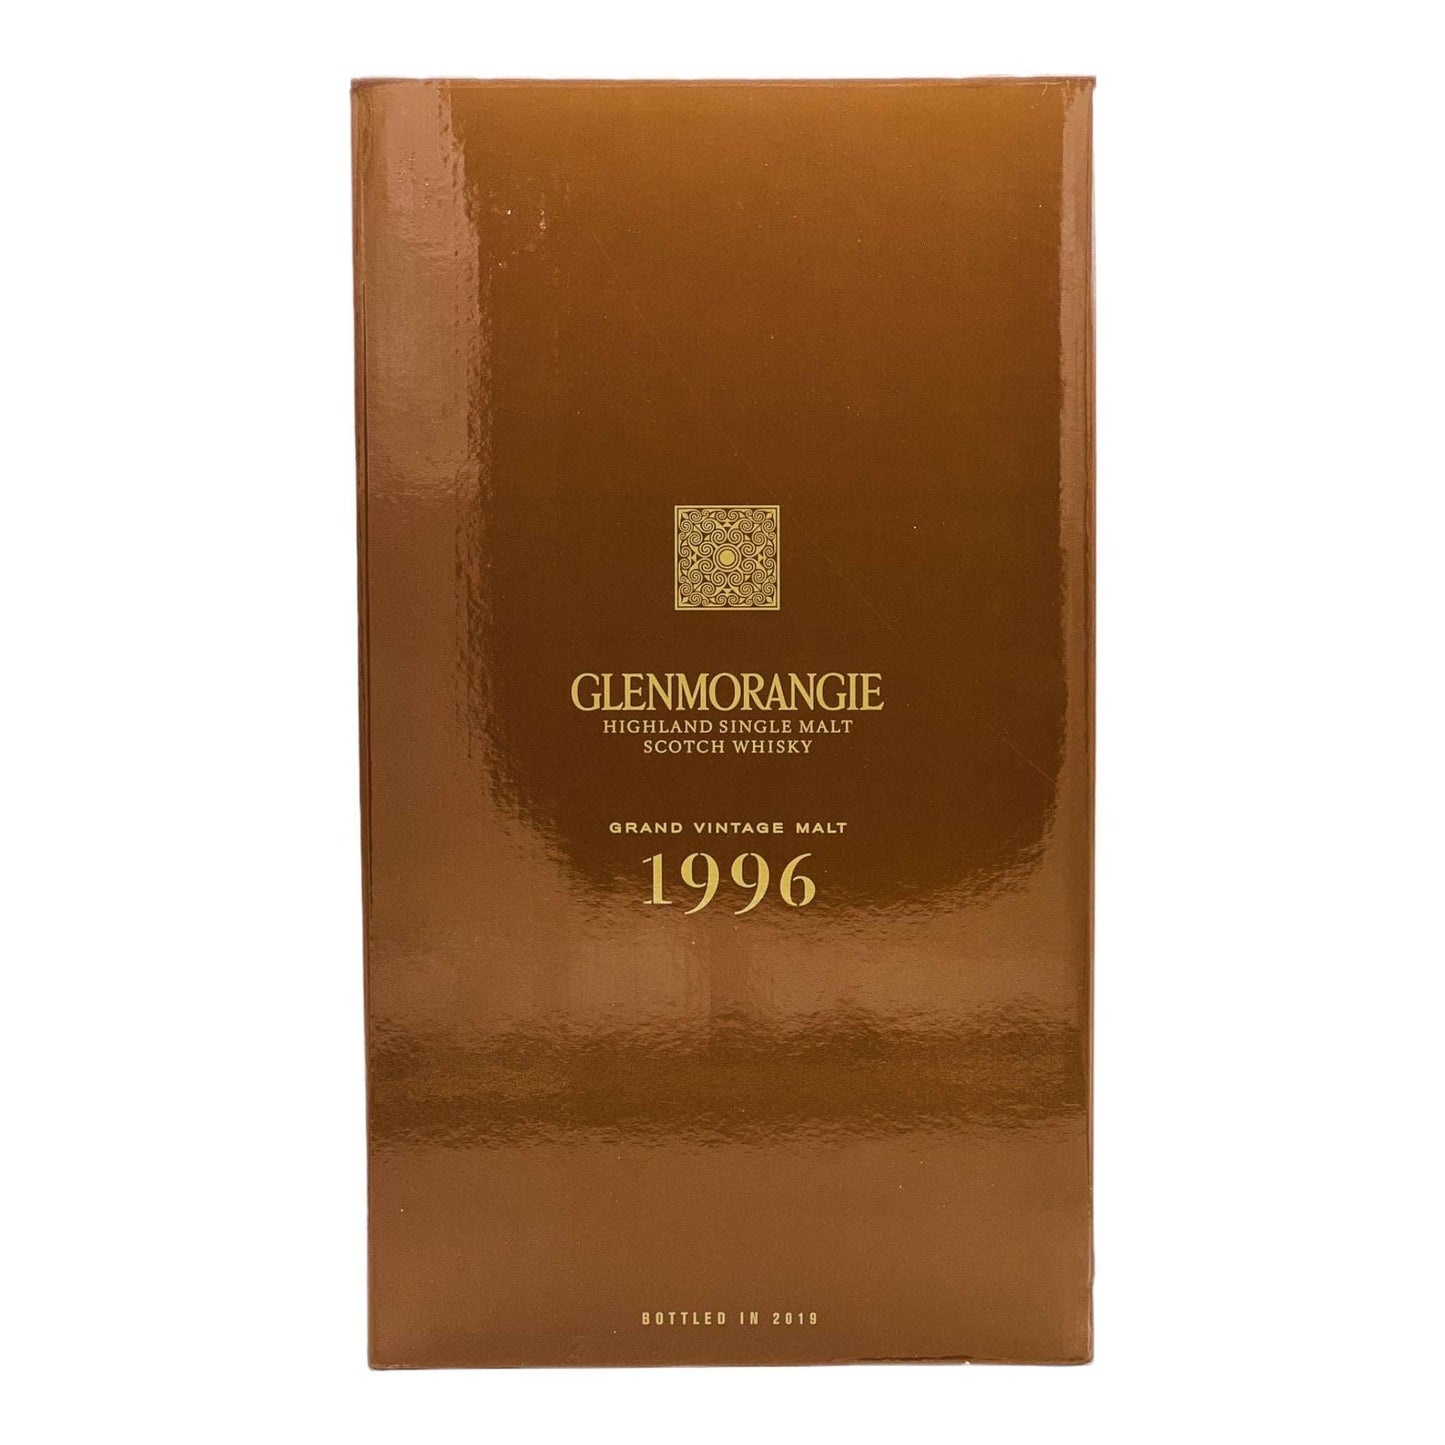 Glenmorangie | 23 Jahre | 1996 Grand Vintage Malt | Limited Release | 0,7l | 43%GET A BOTTLE